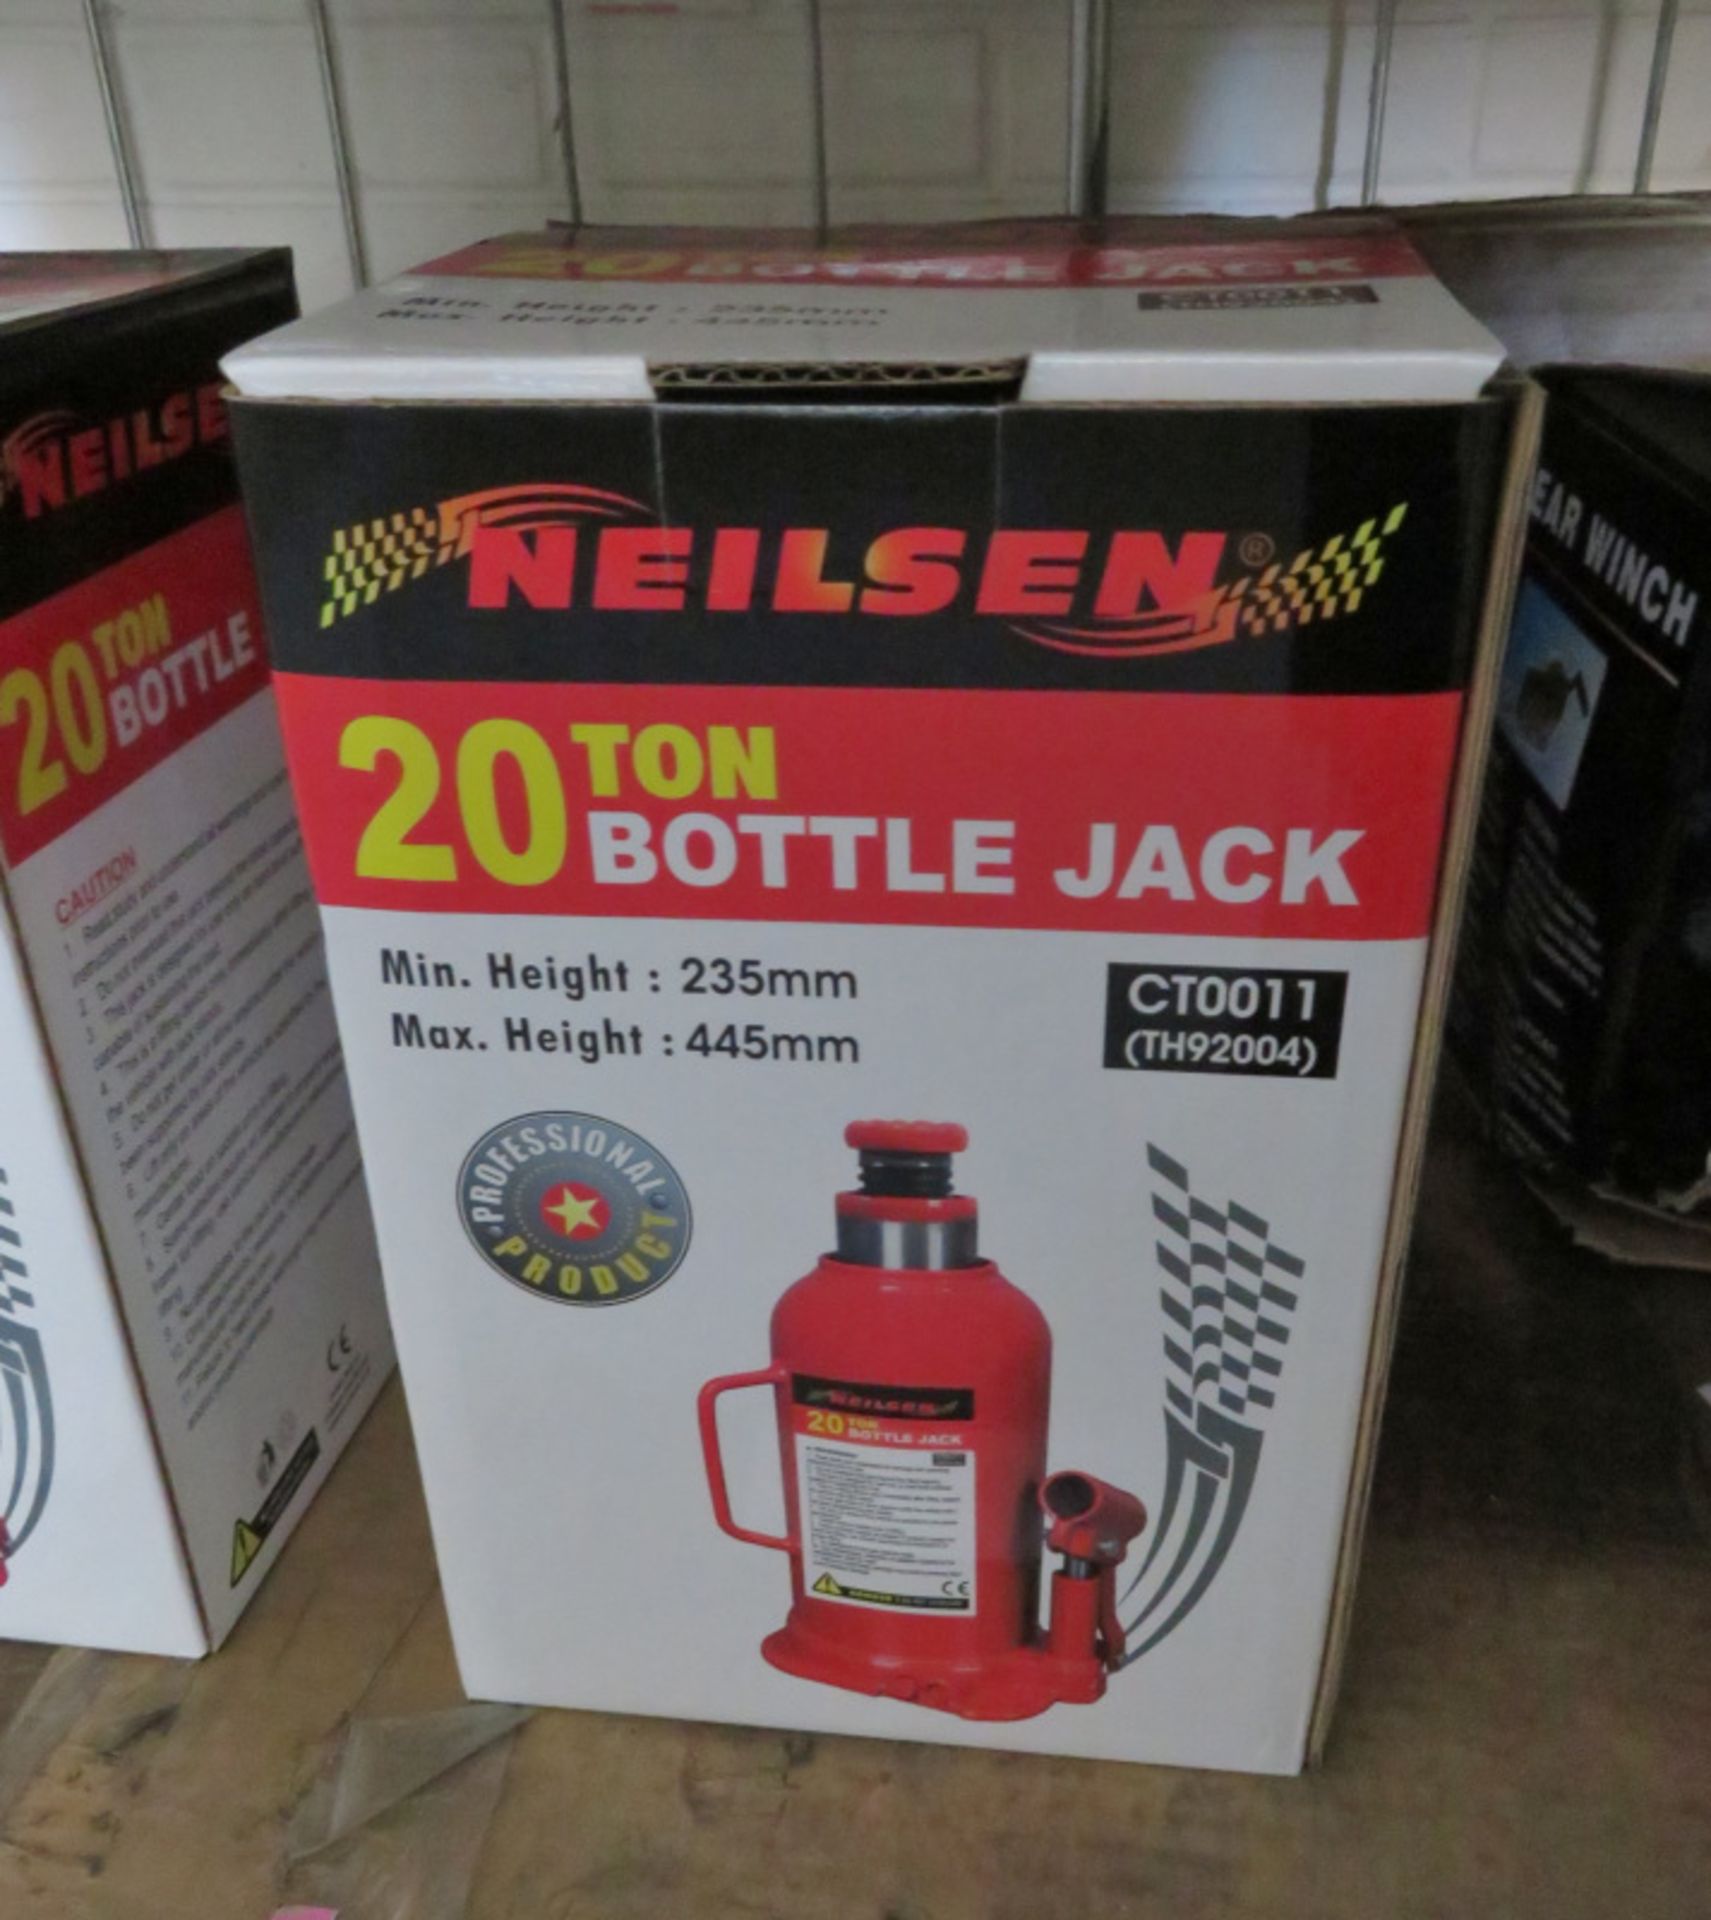 Neilsen 20 Ton Bottle Jack